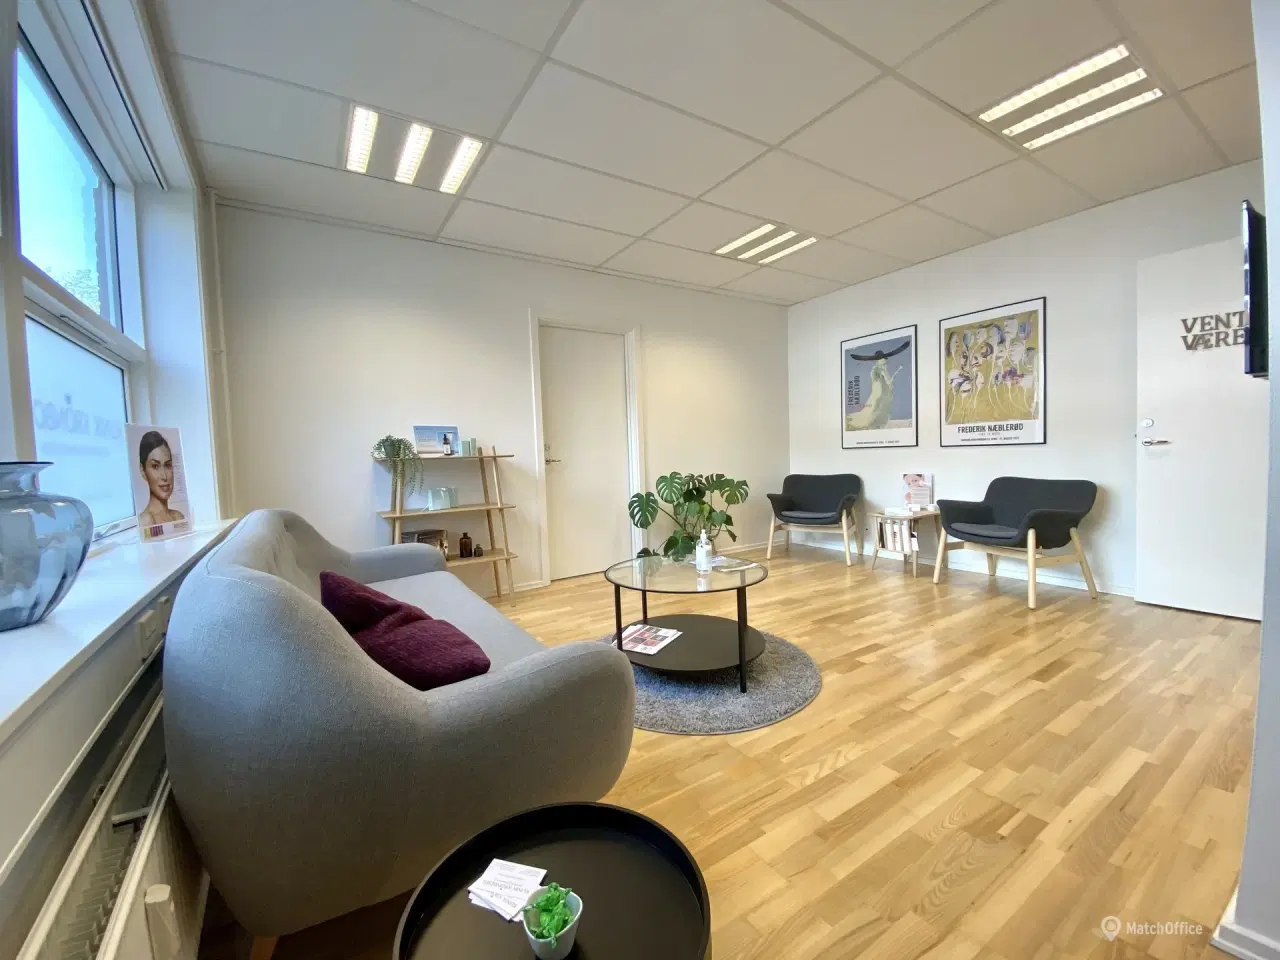 Billede 6 - 112 m² kontor/klinik lokale i velplaceret ejendom i Middelfart